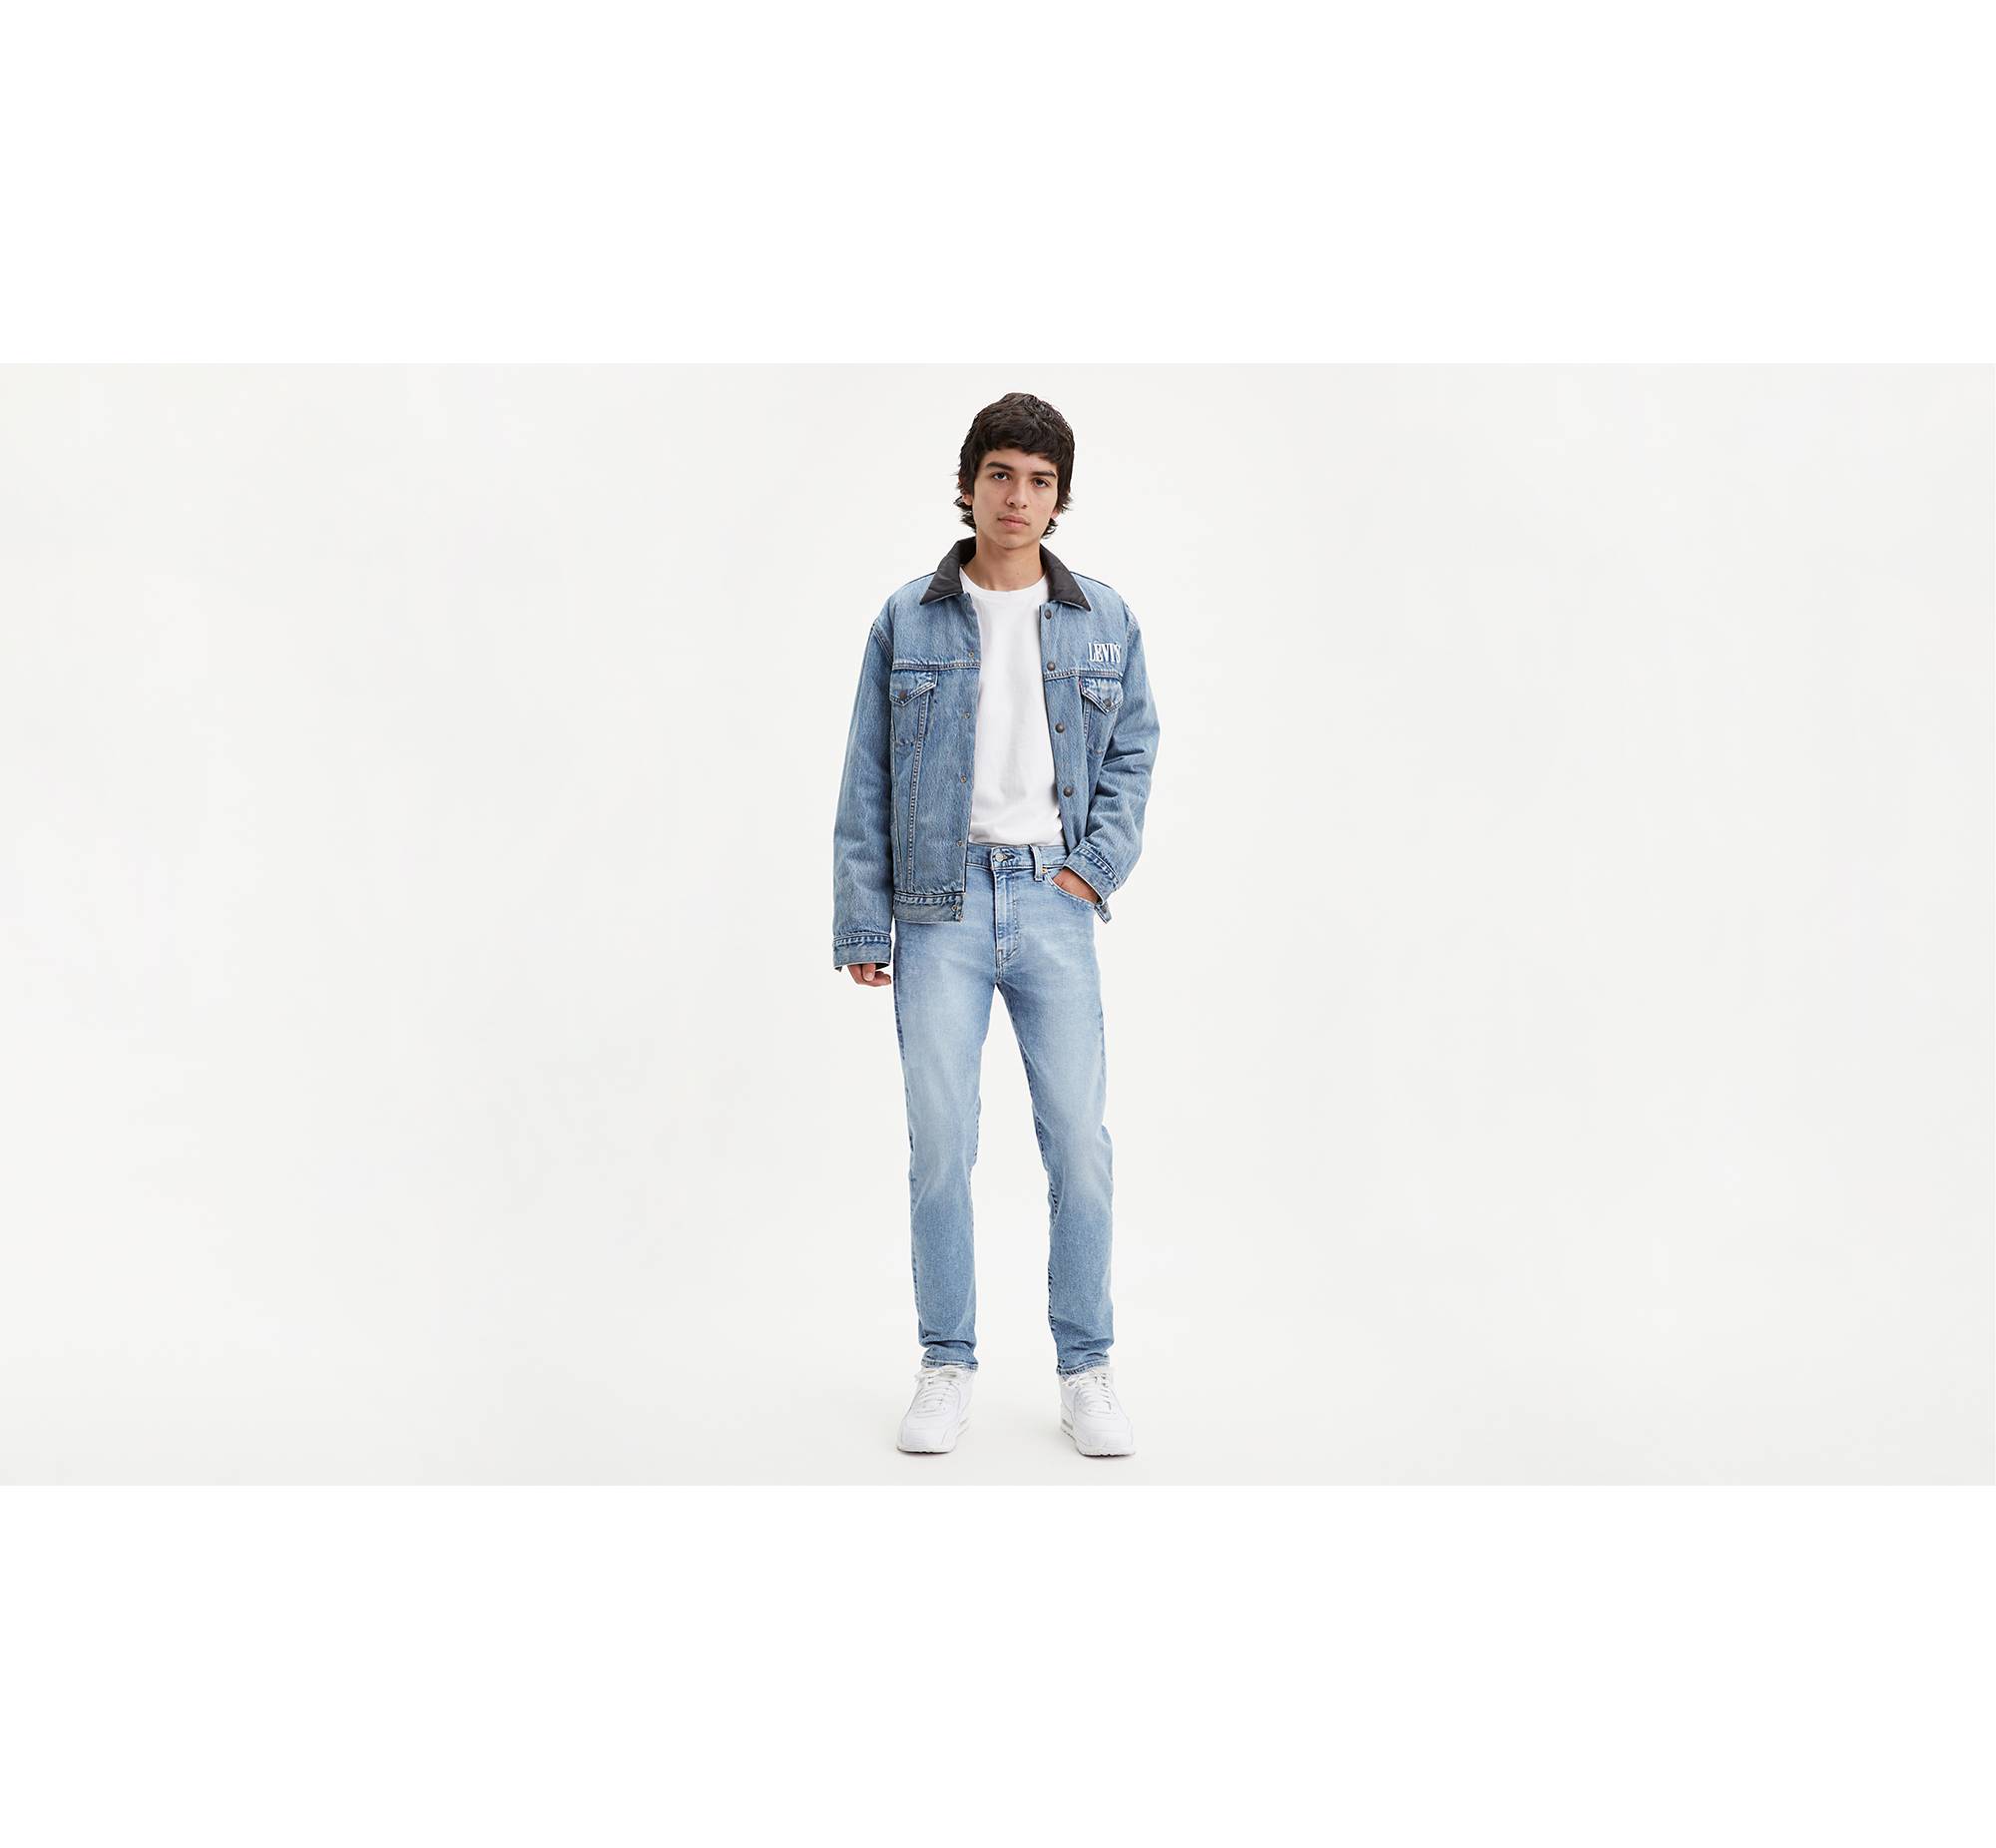 512™ Slim Taper Fit Men's Jeans - Medium Wash | Levi's® US